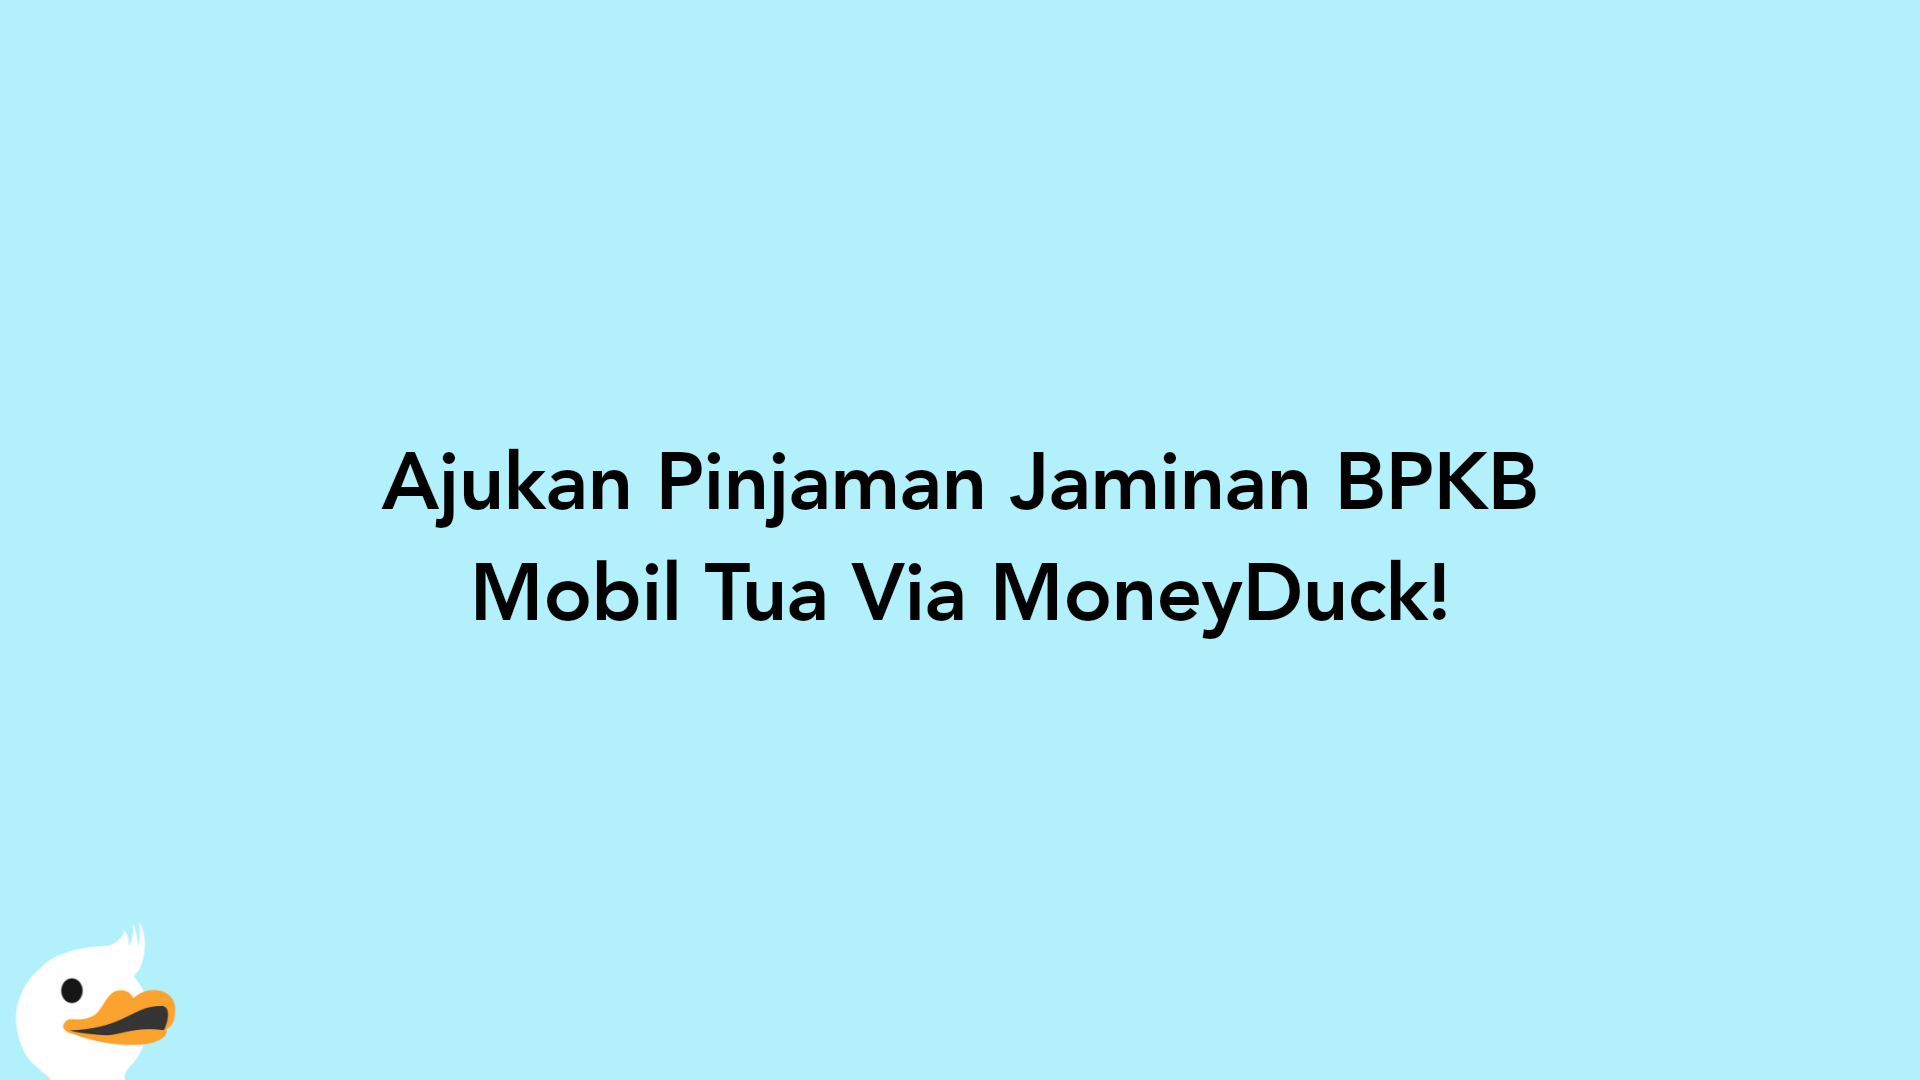 Ajukan Pinjaman Jaminan BPKB Mobil Tua Via MoneyDuck!